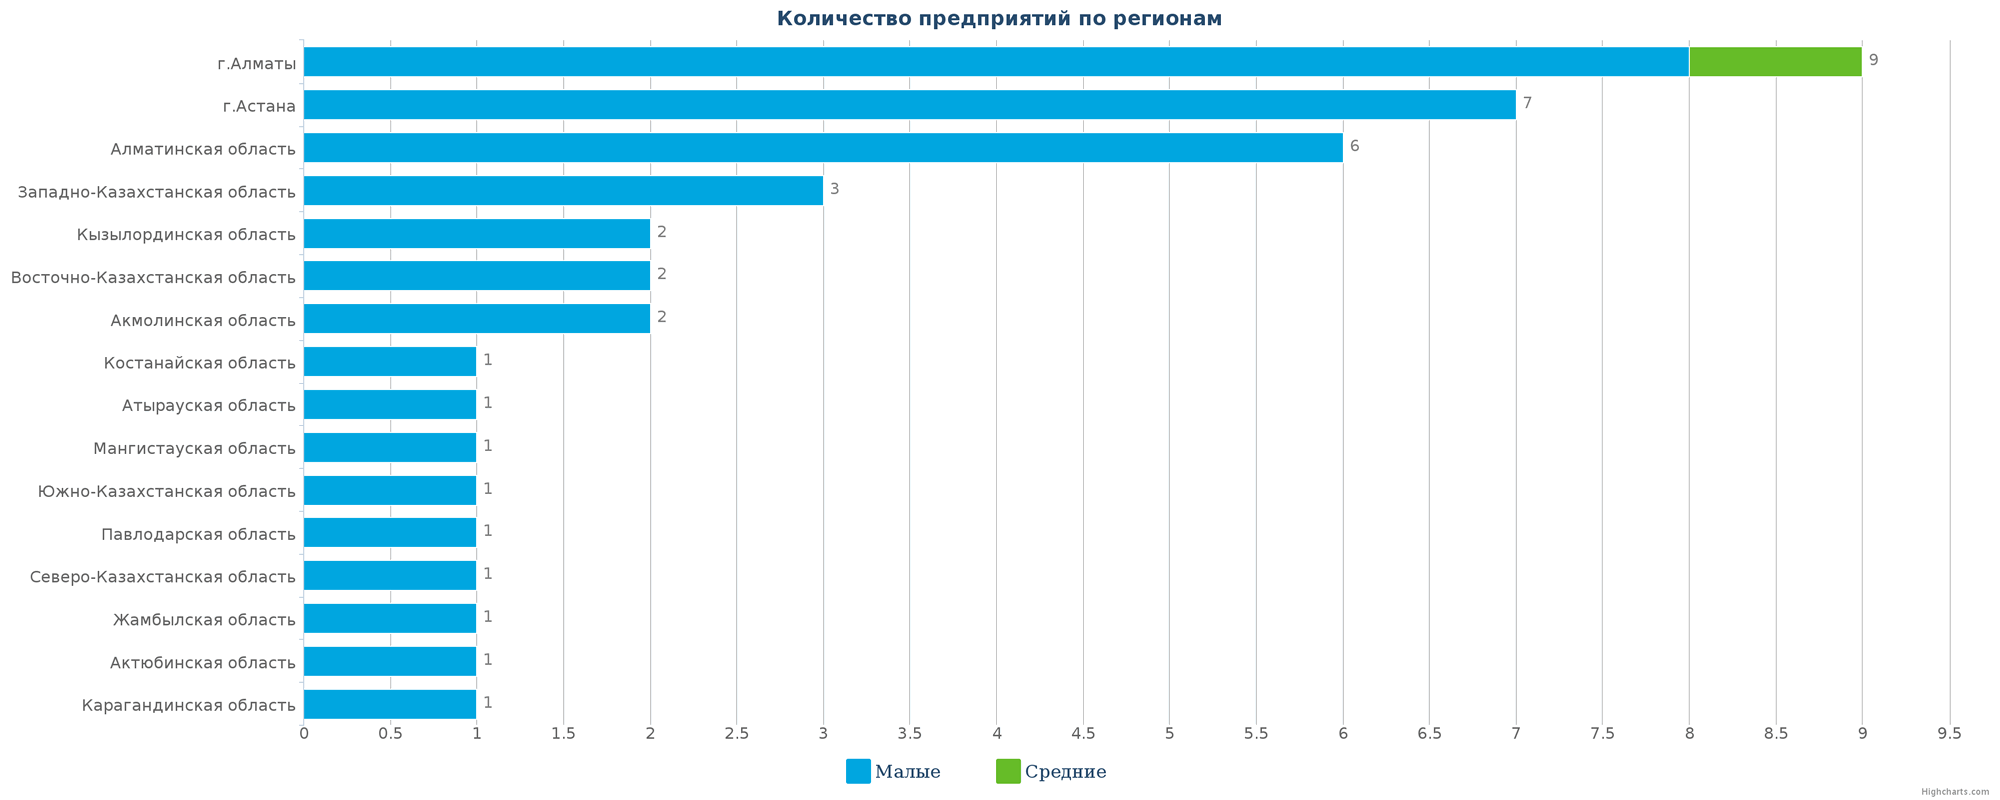 Количество новых производственных предприятий по регионам Казахстана